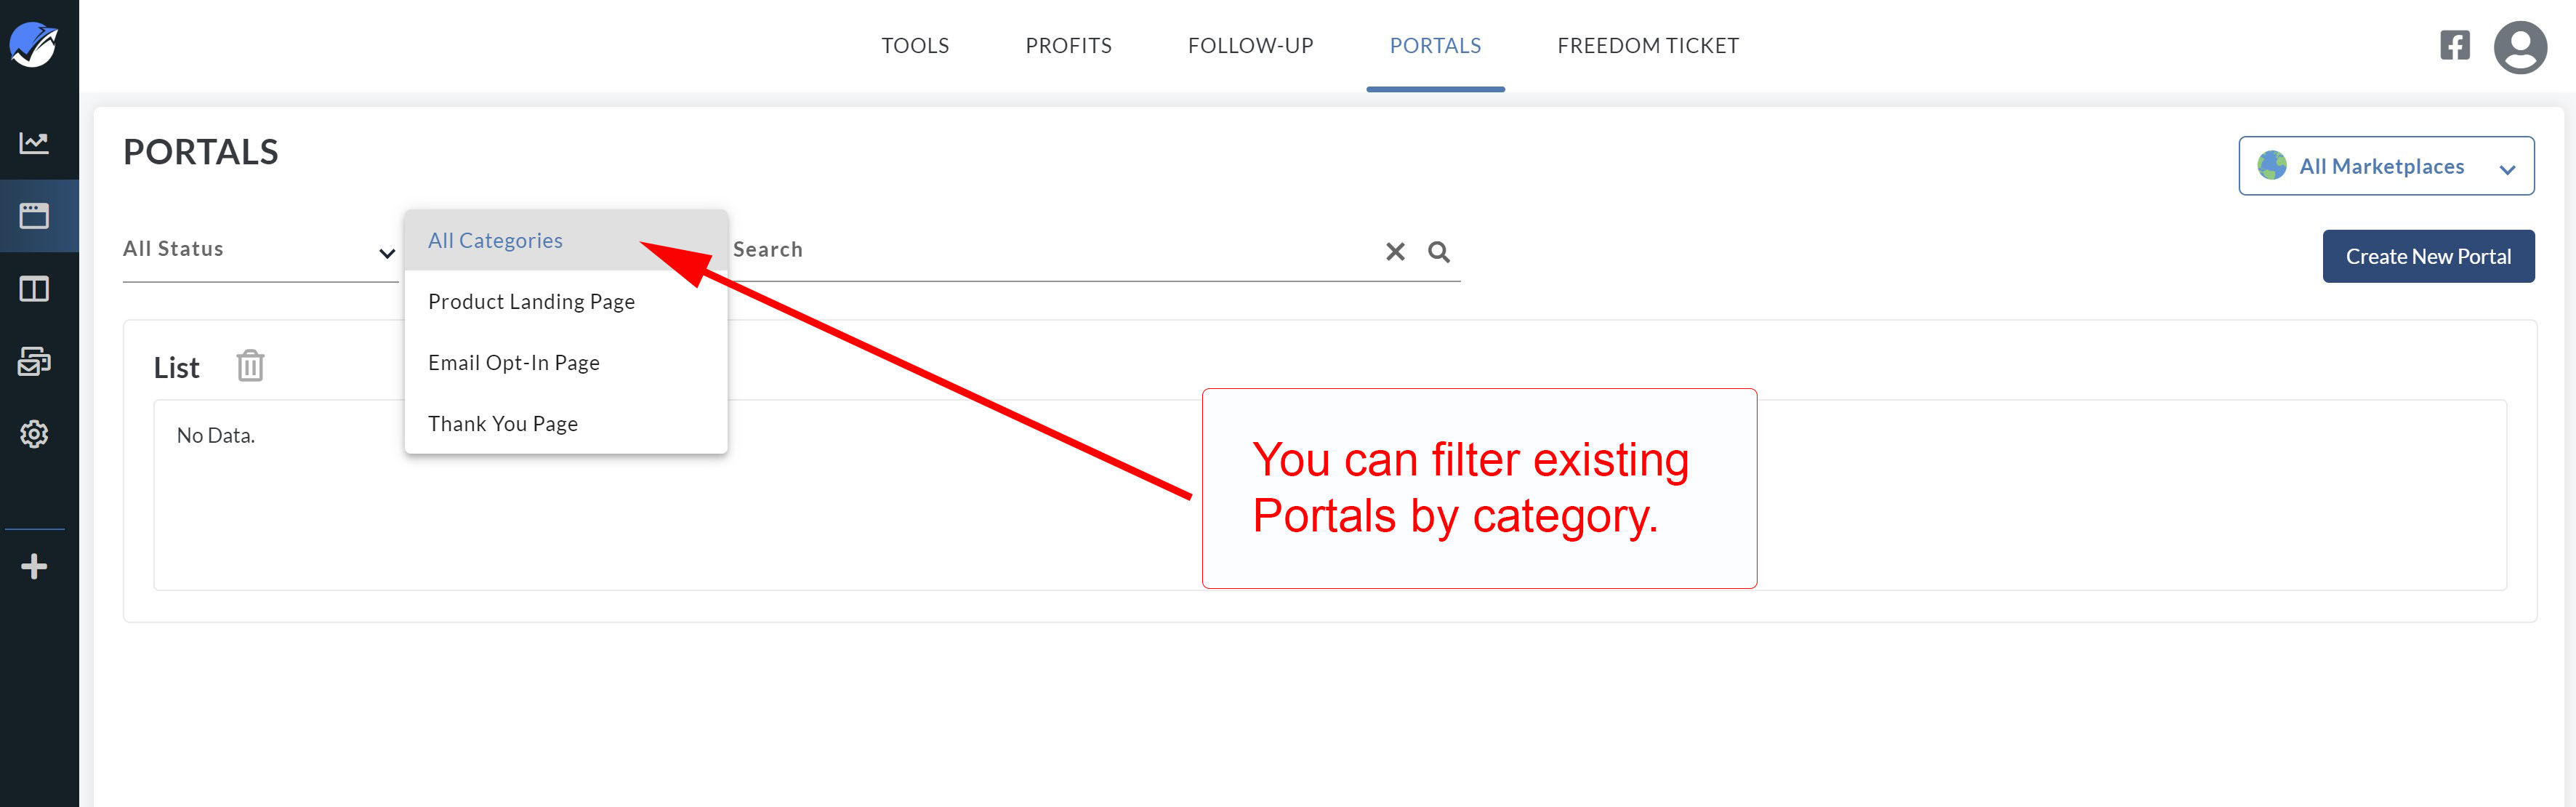 new_portals_filters2.jpg